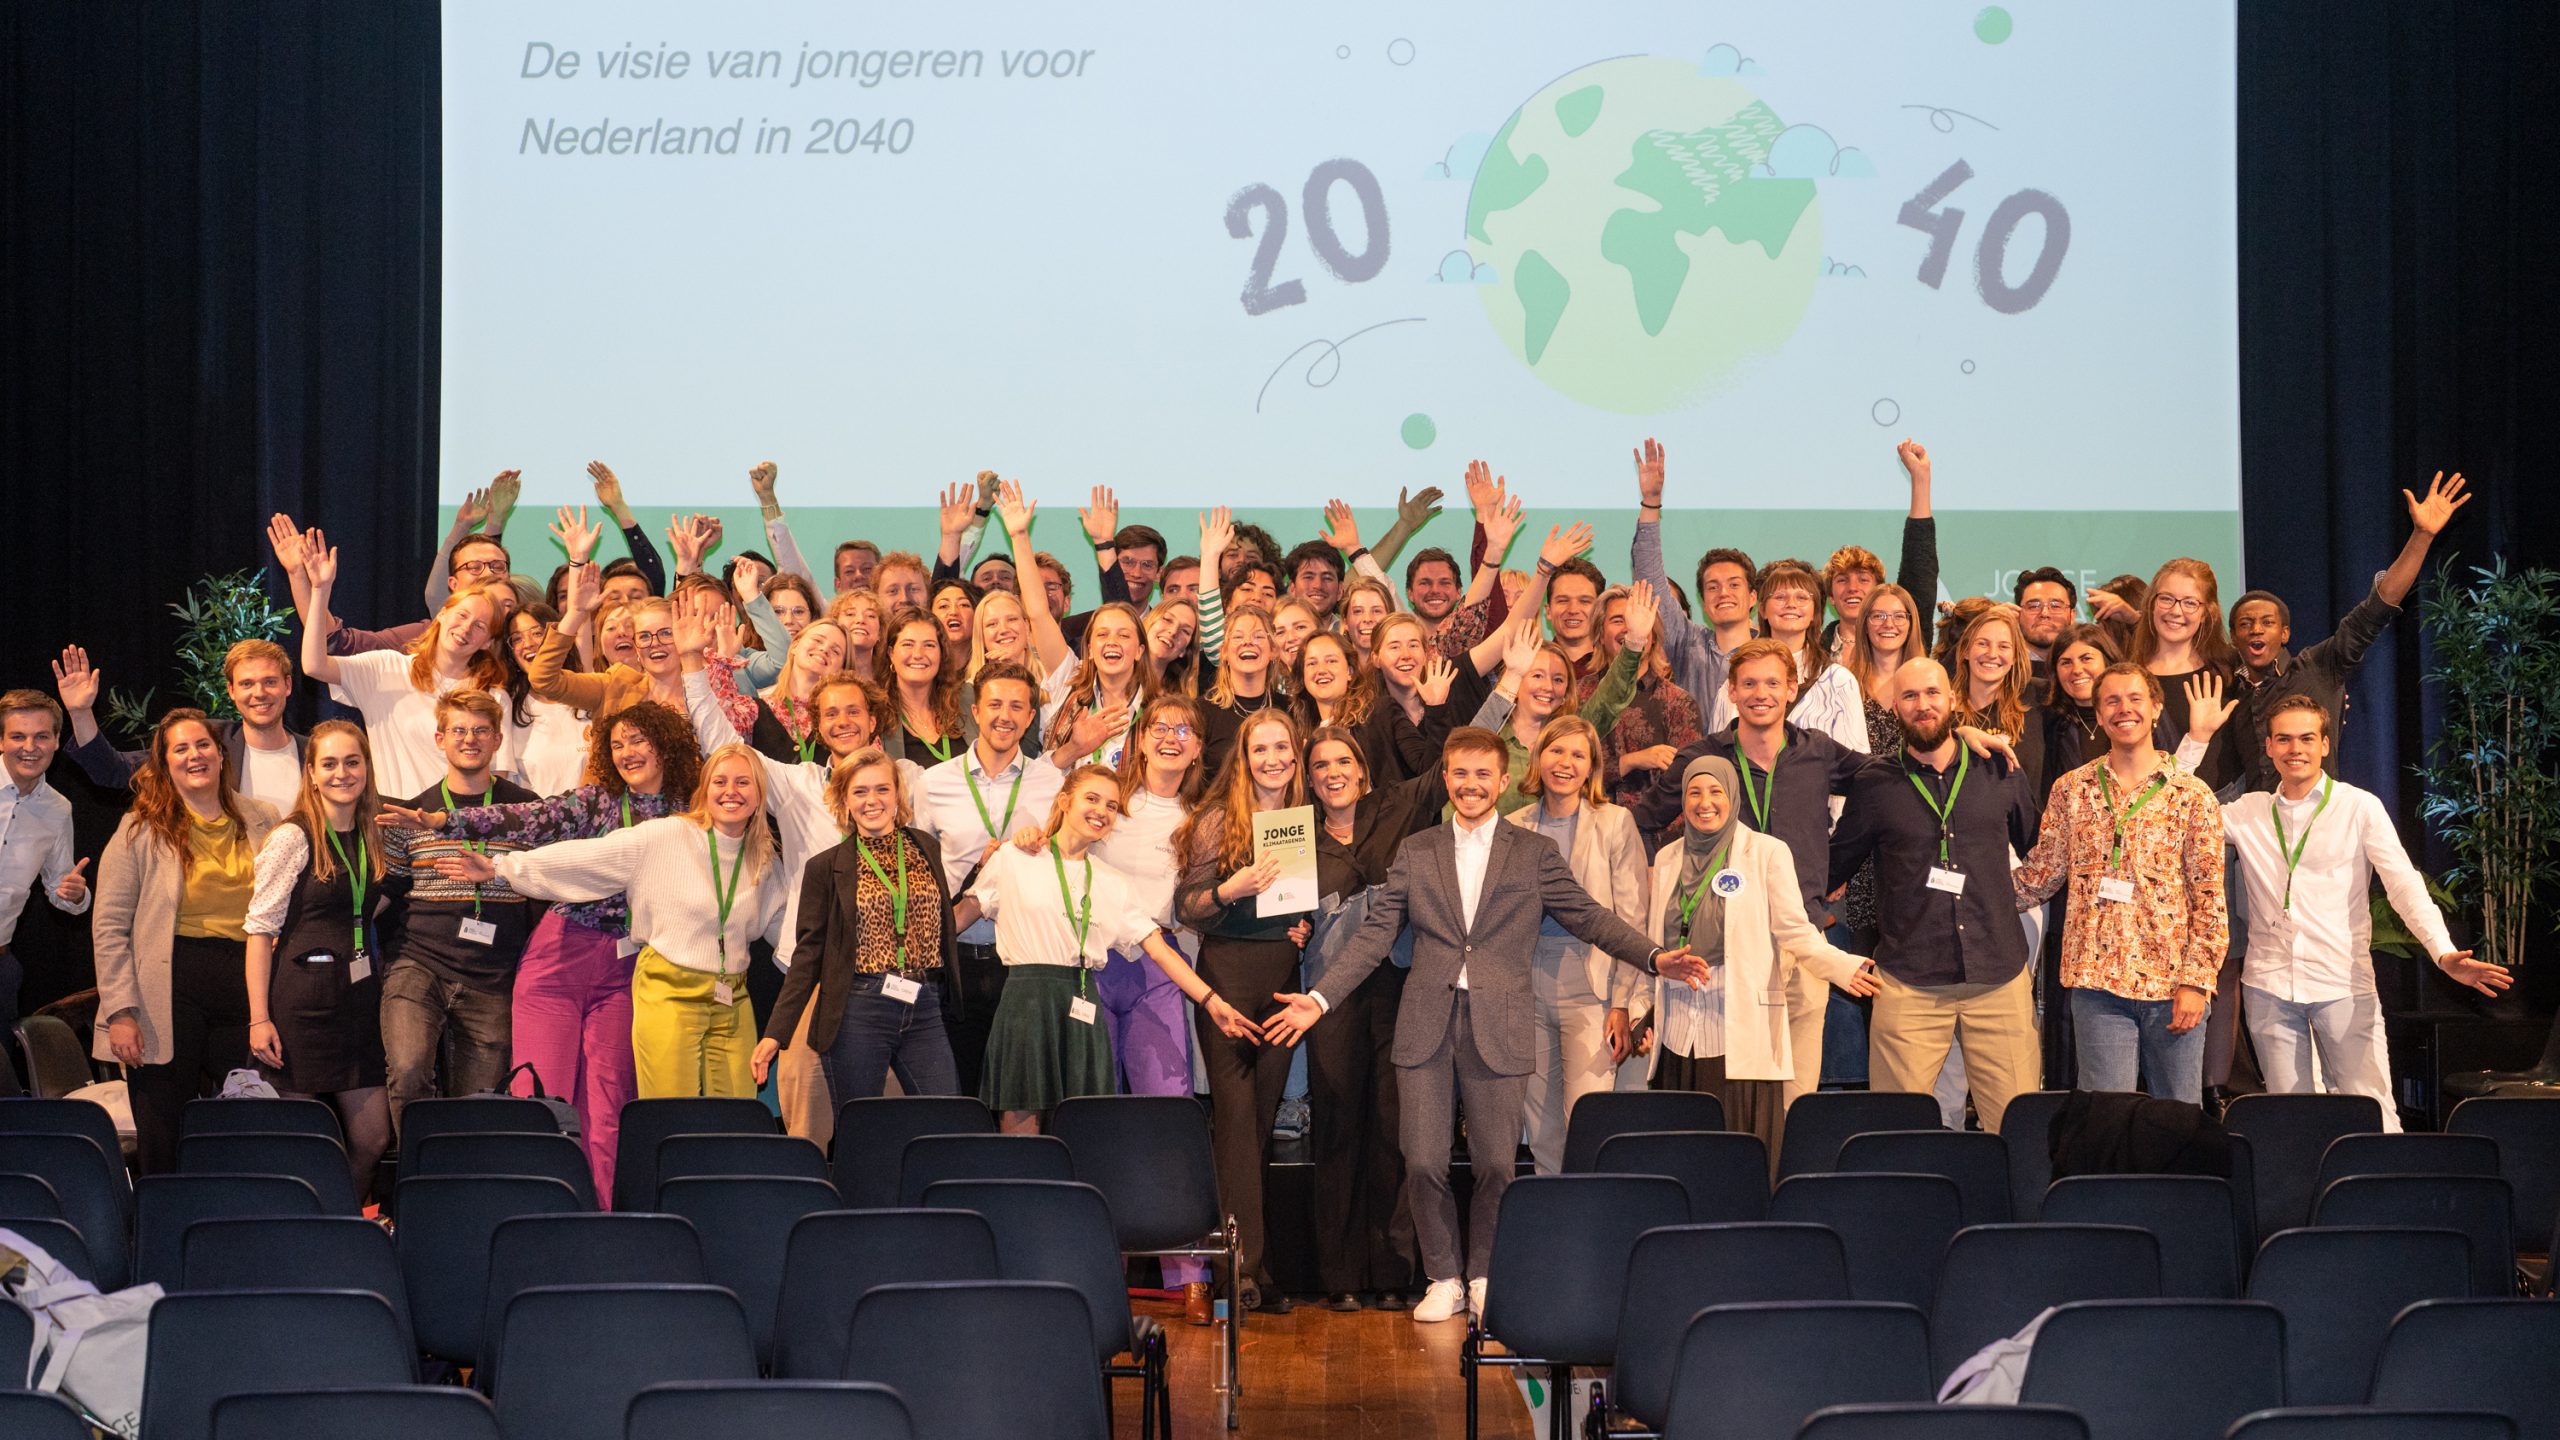 Eén miljoen jongeren lanceren toekomstvisie voor klimaatpositief Nederland